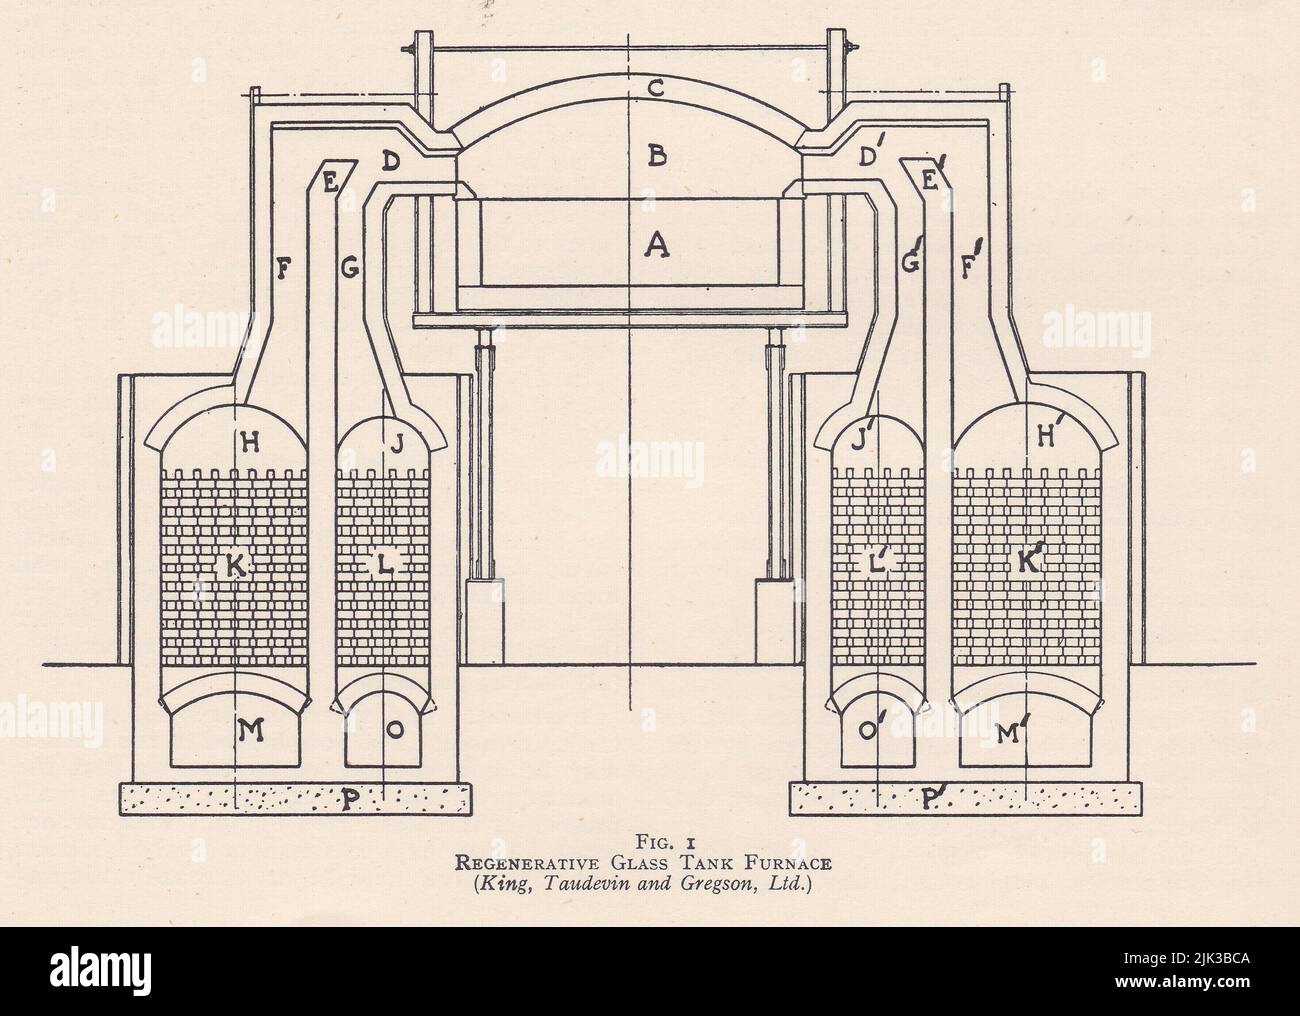 Vintage illustration of a regenerative glass tank furnace. Stock Photo